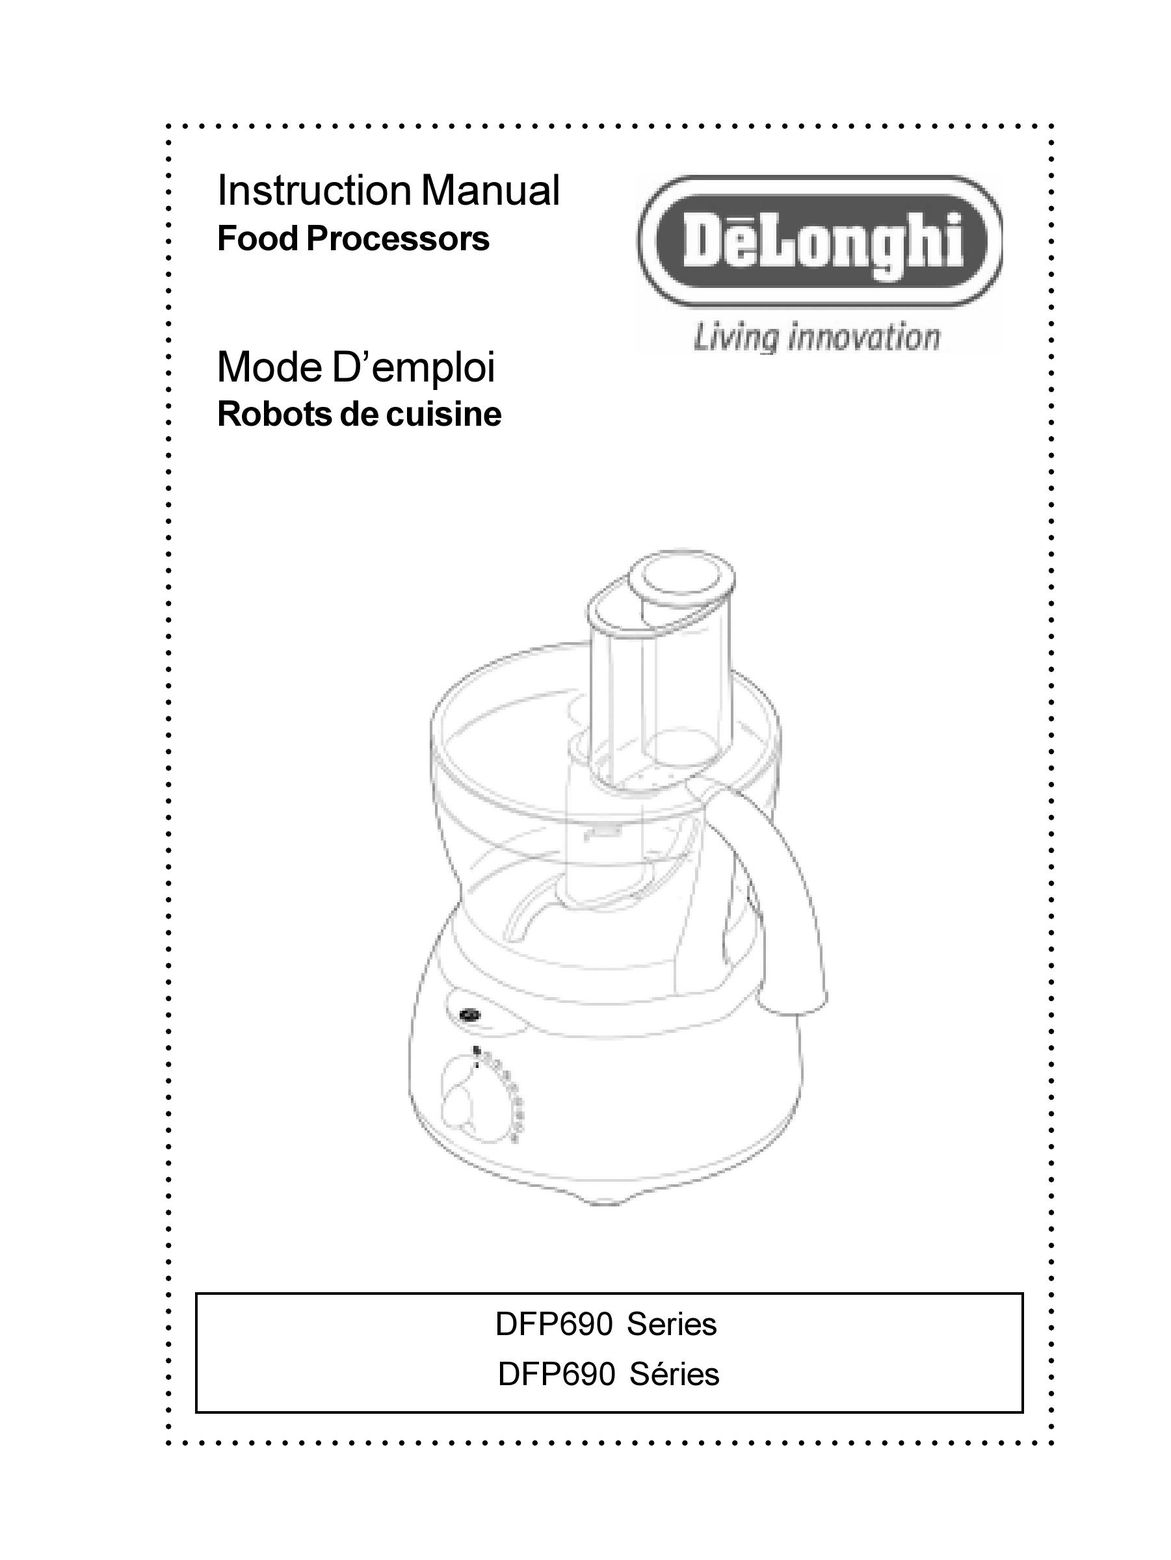 DeLonghi DFP690 Series Blender User Manual